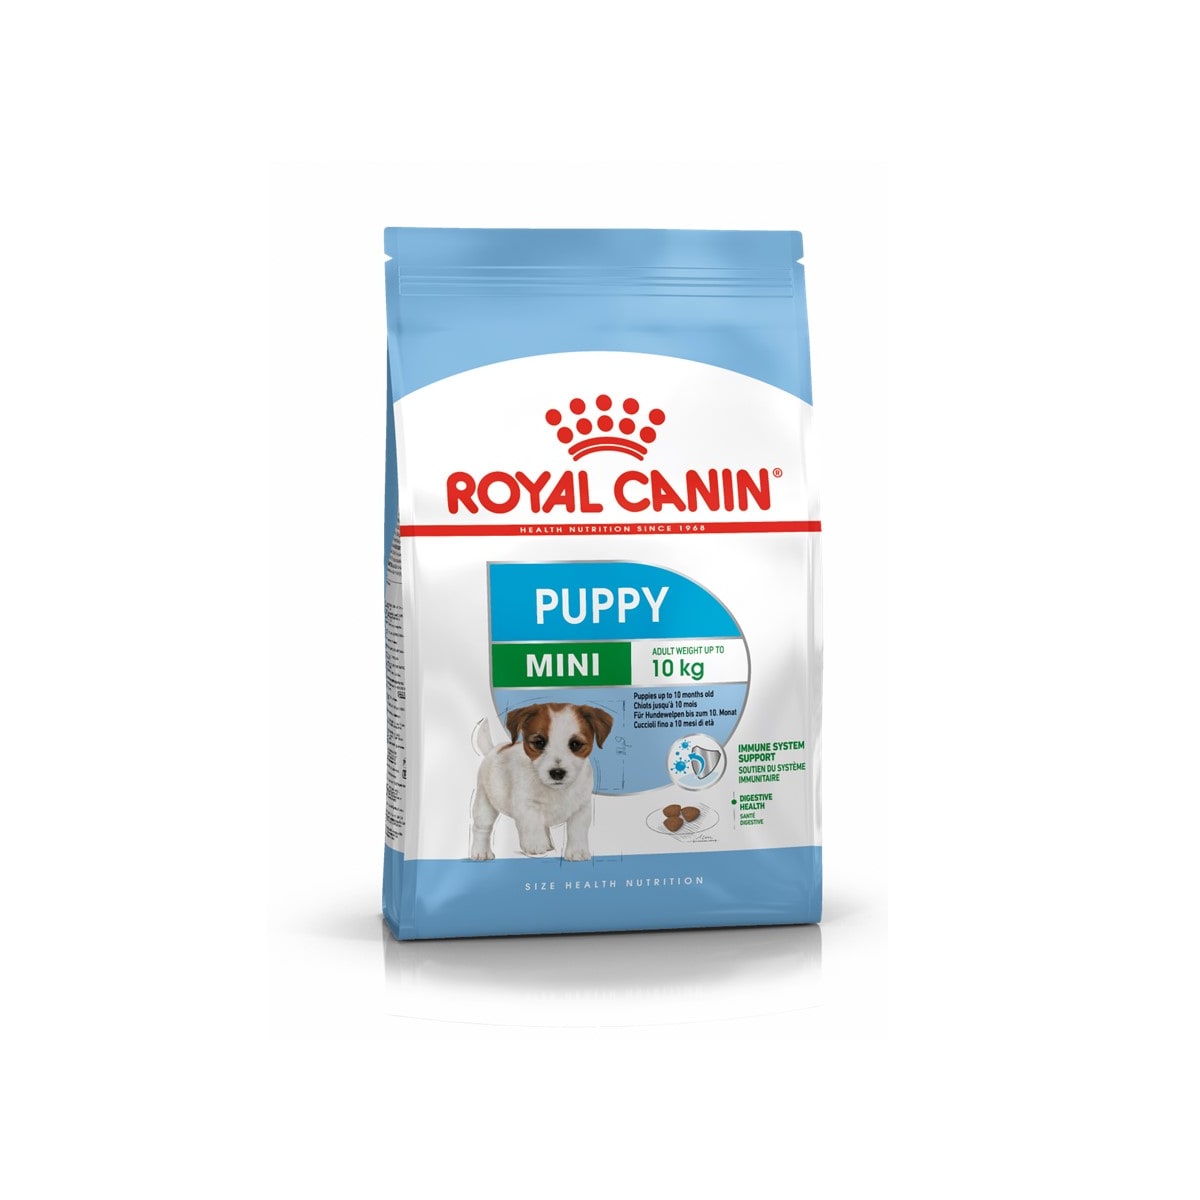 Royal Canin โรยัล คานิน อาหารสุนัขแบบเม็ด สำหรับลูกสุนัขสายพันธุ์เล็ก